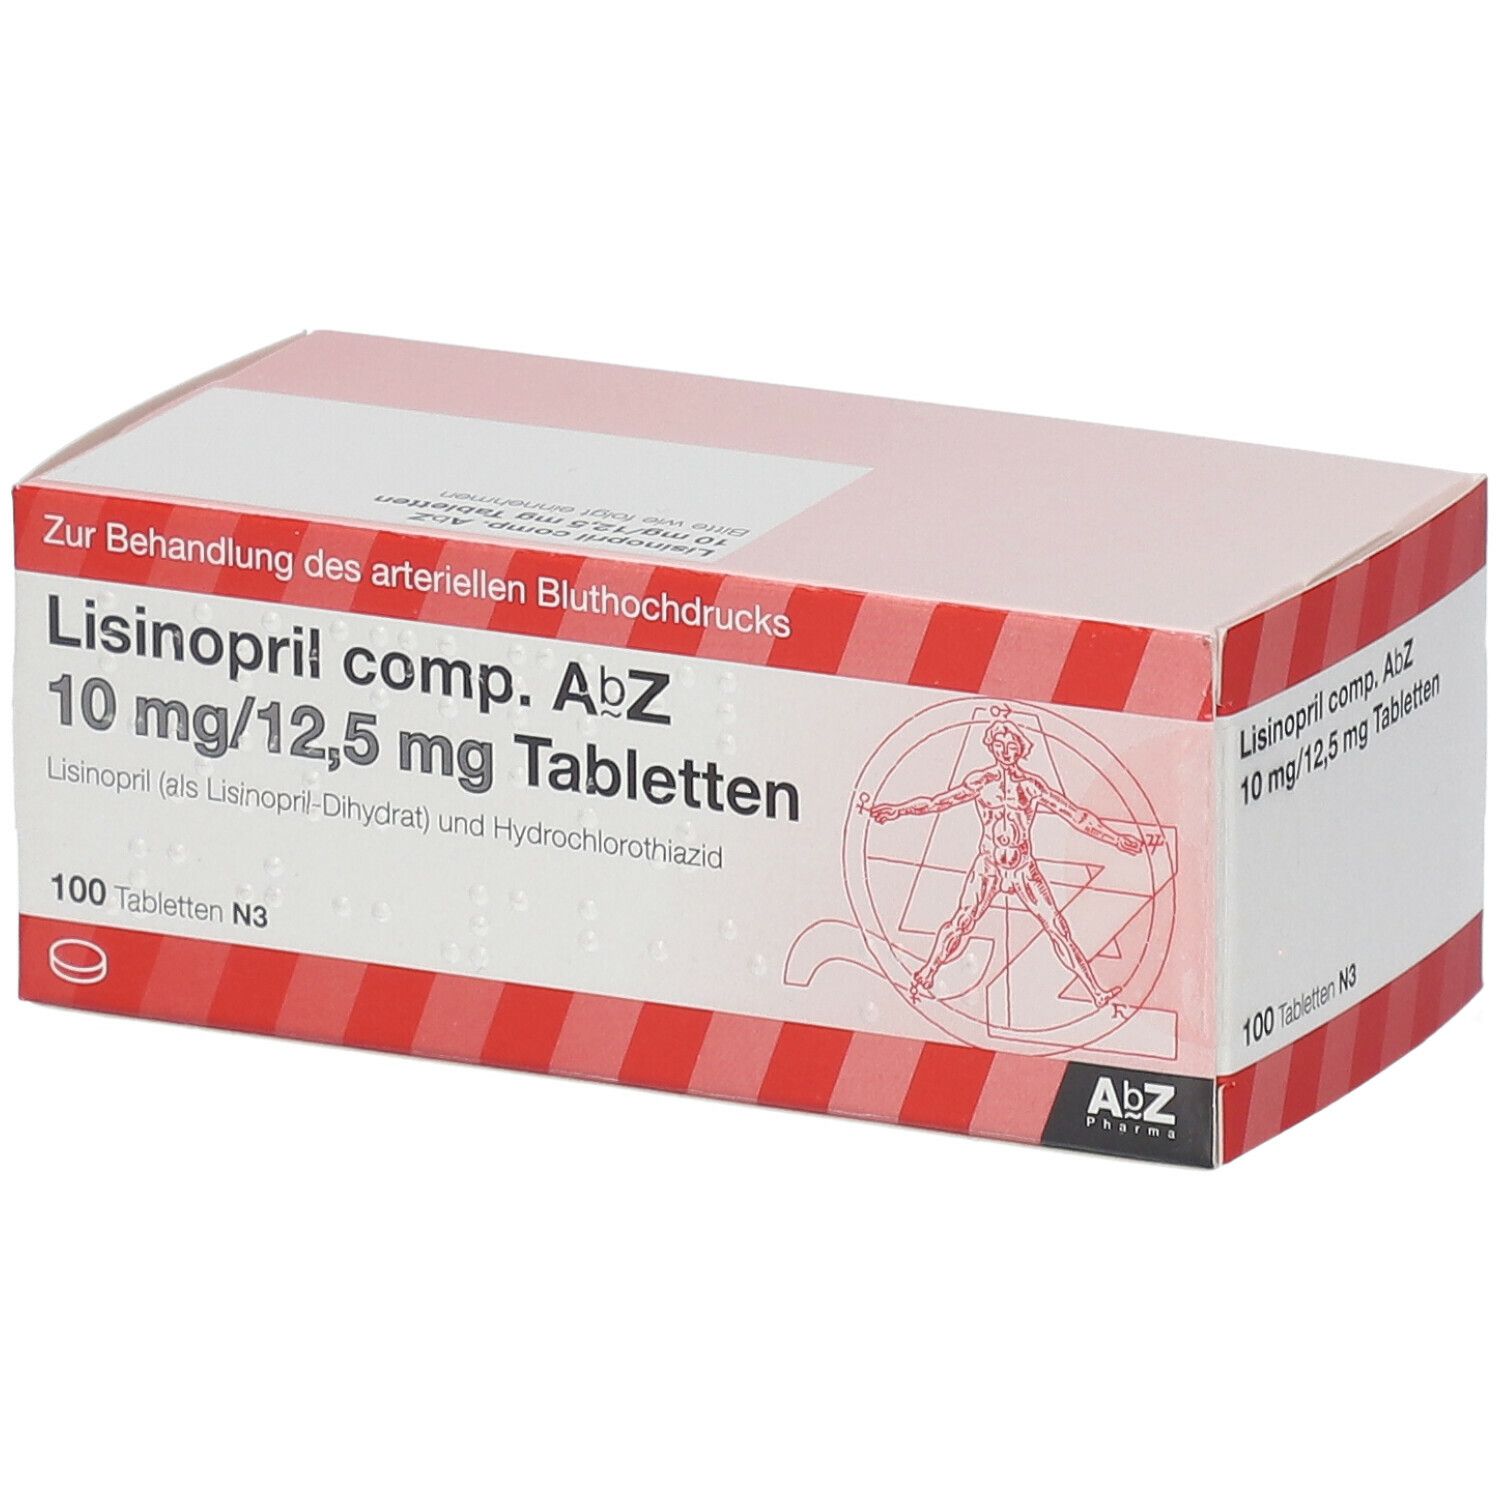 Lisinopril comp. AbZ 10 mg/12,5 mg